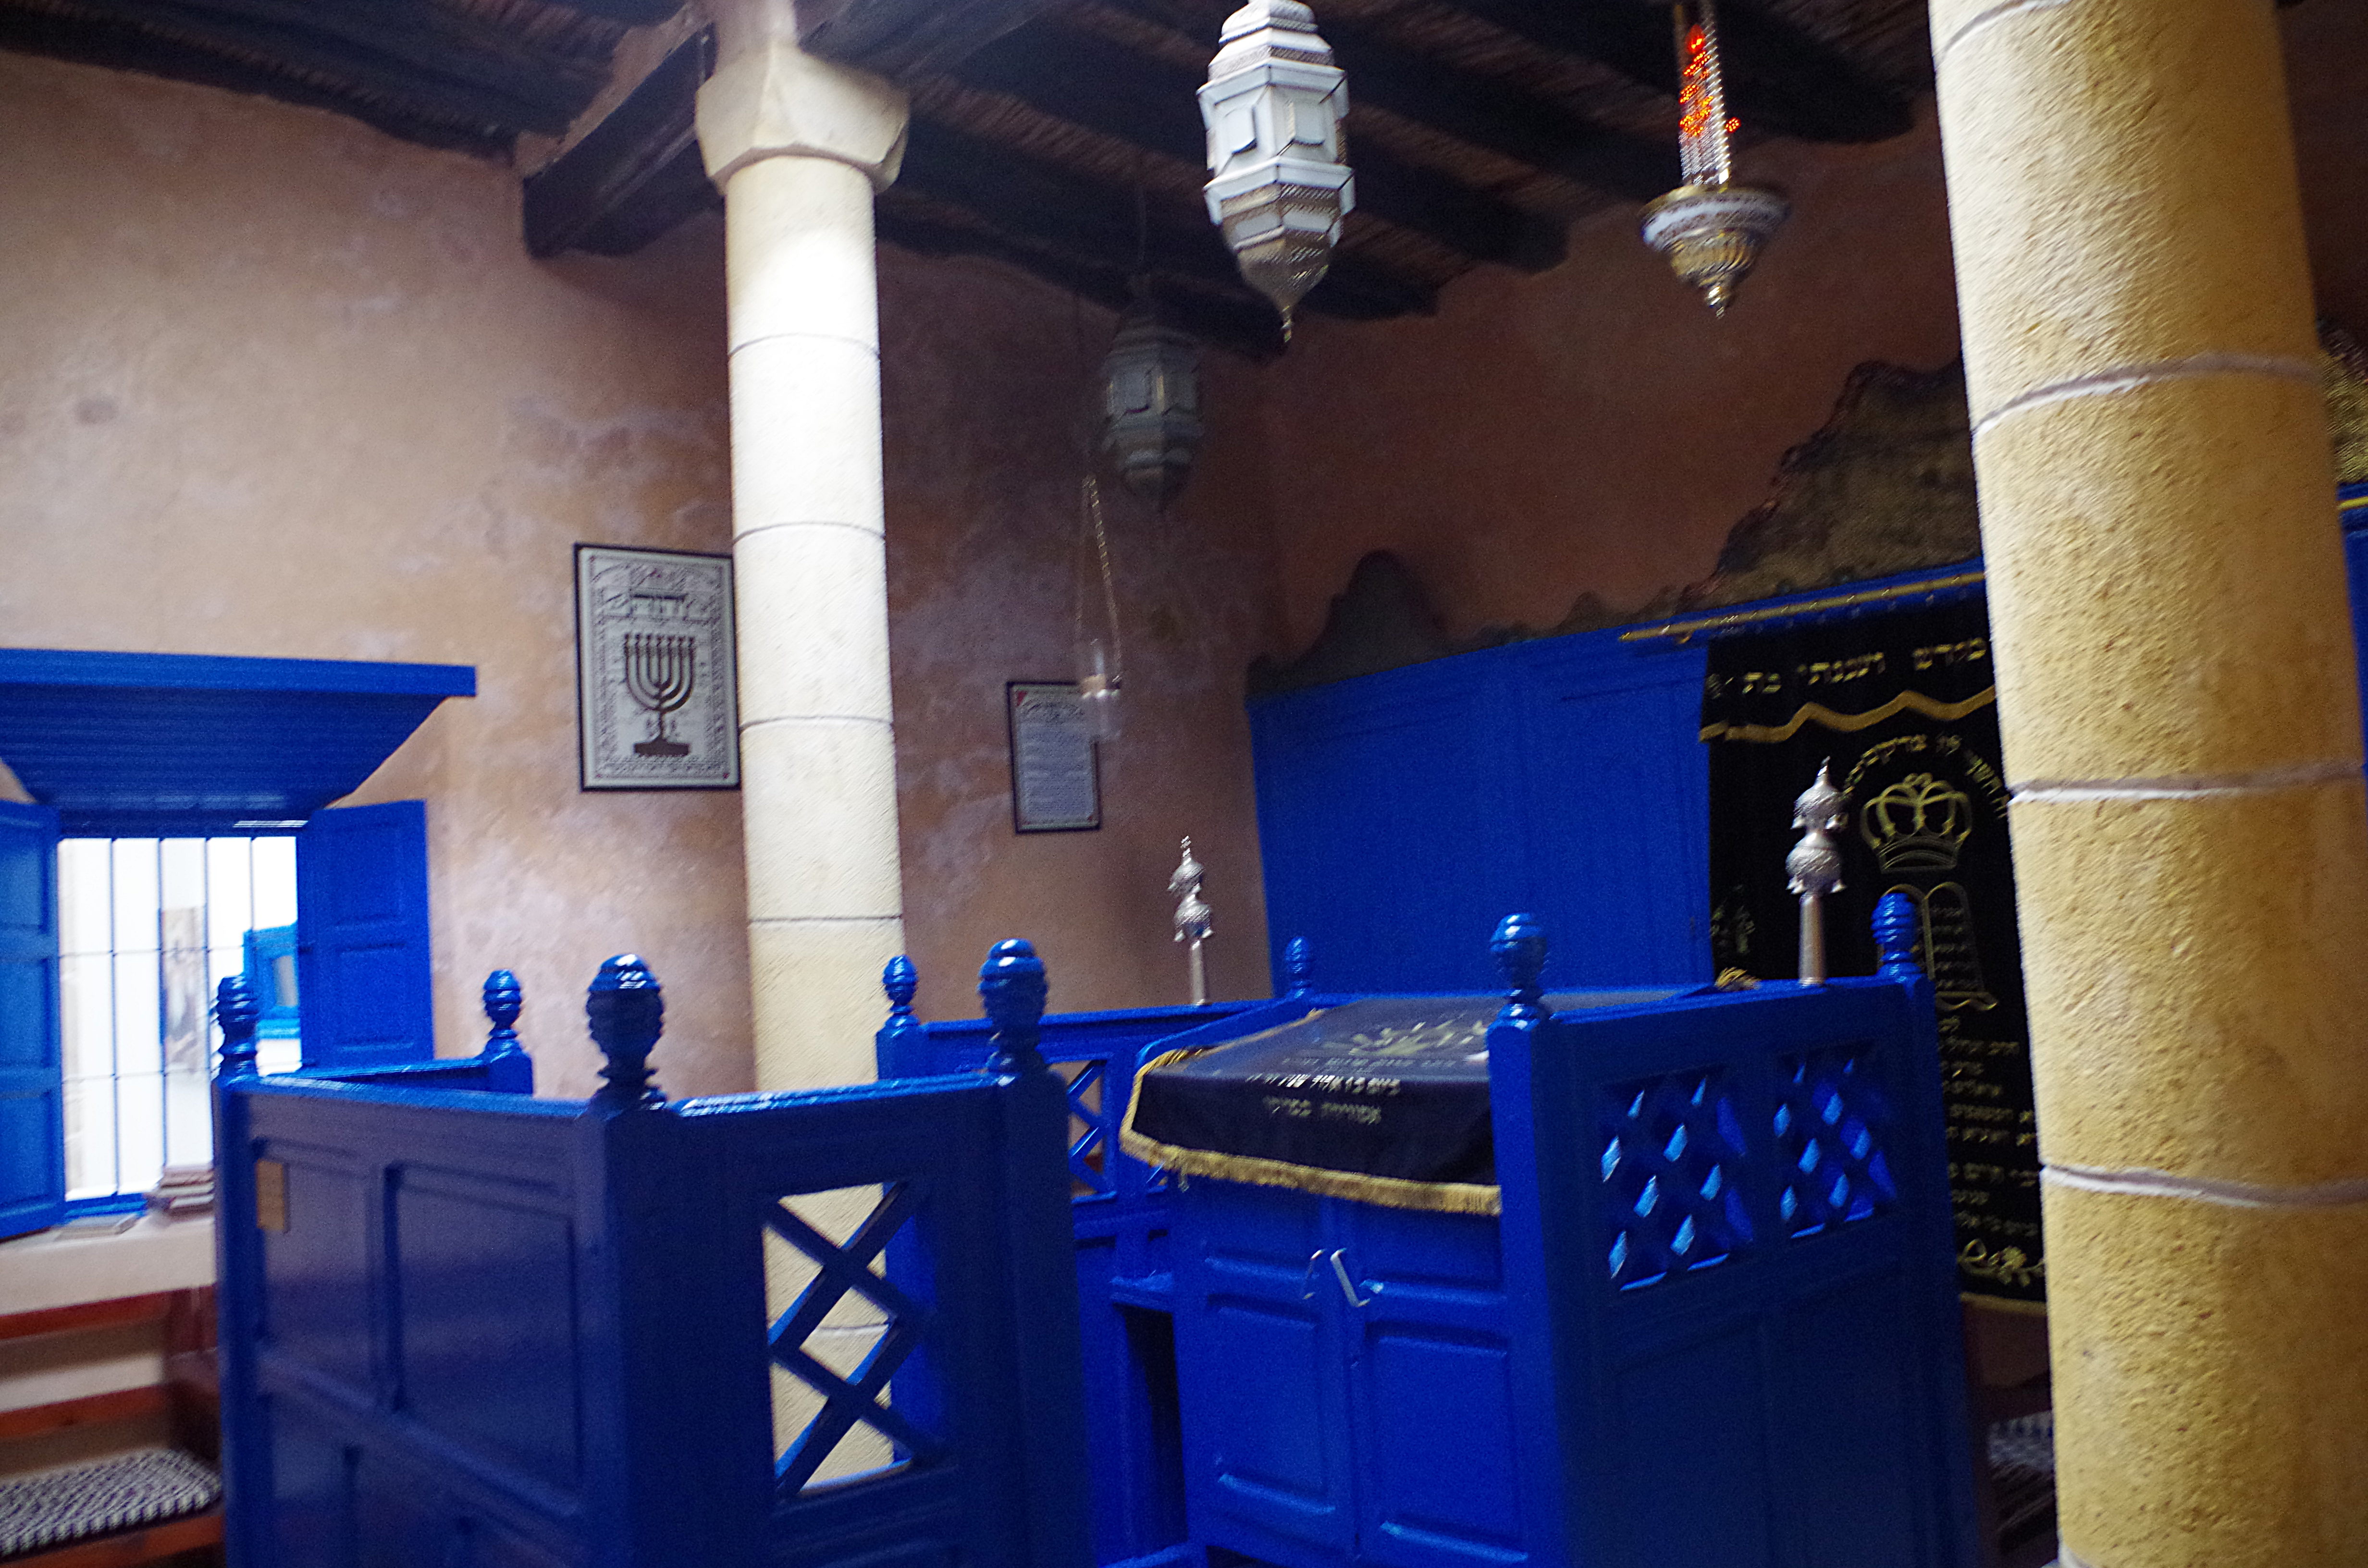 كنيس الحاخام حاييم بينتو - مدينة الصويرة - المغرب. (photo: Claudia Mende)